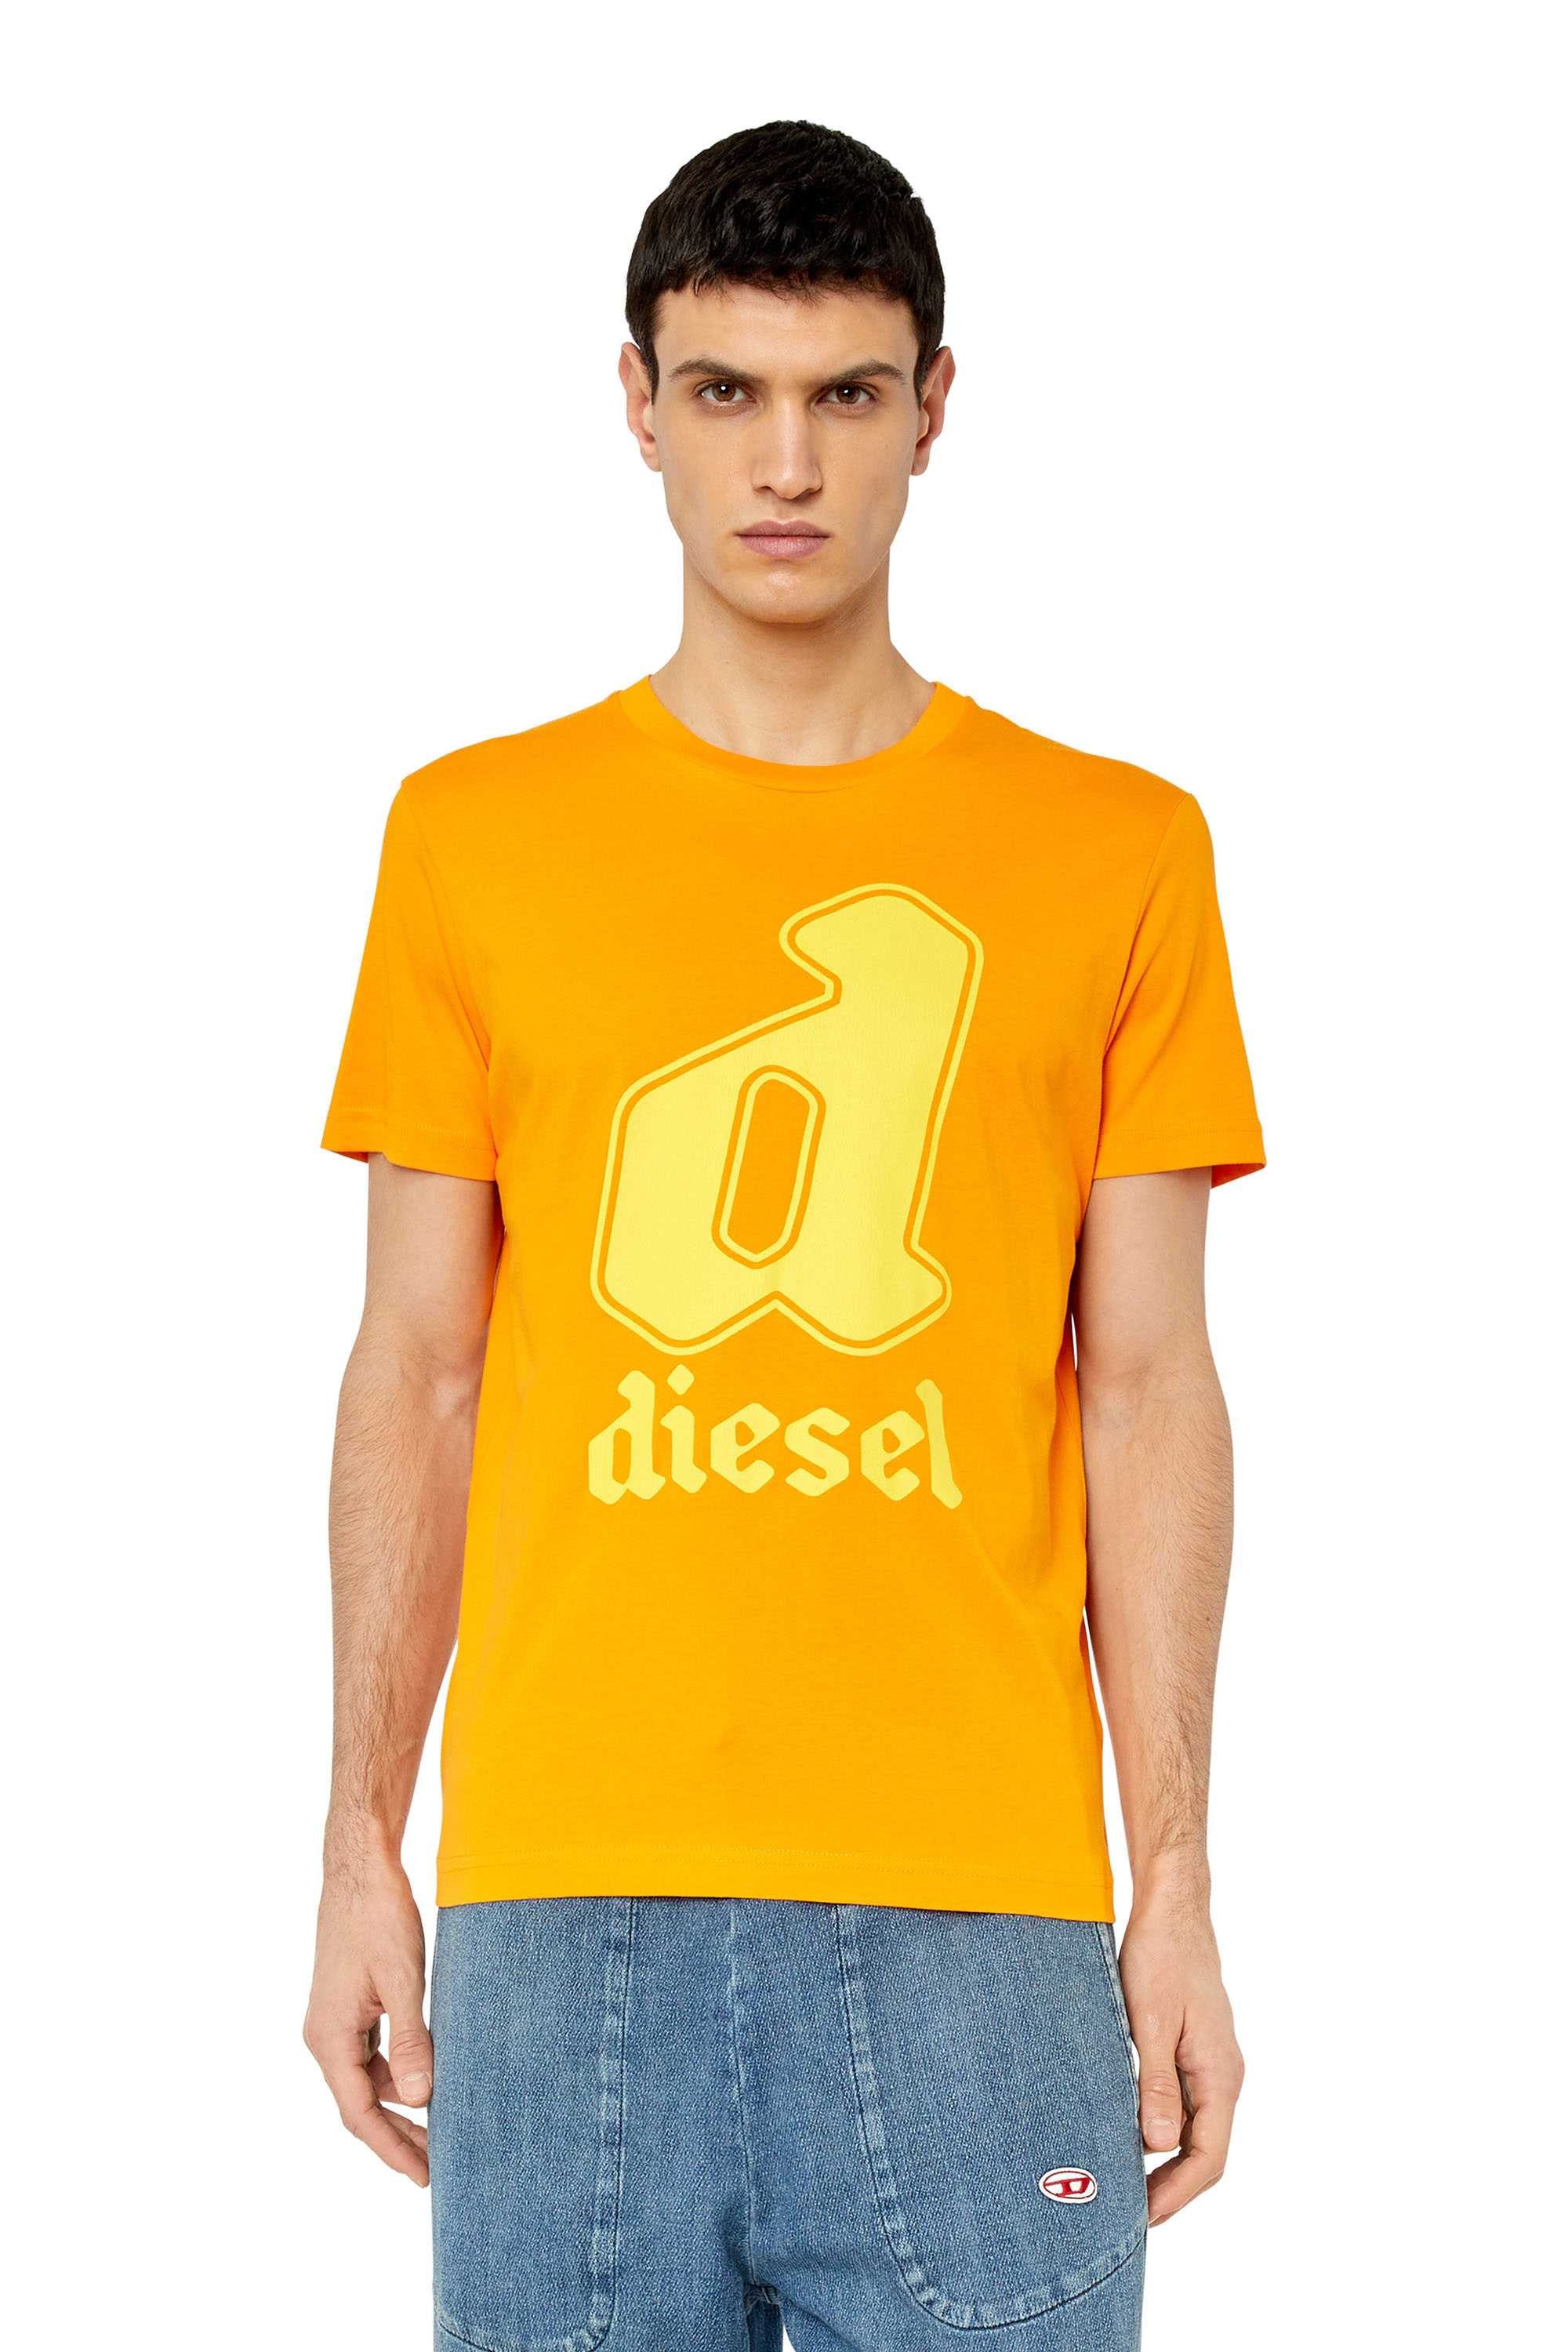 Diesel - T-DIEGOR-K54, Orange - Image 1